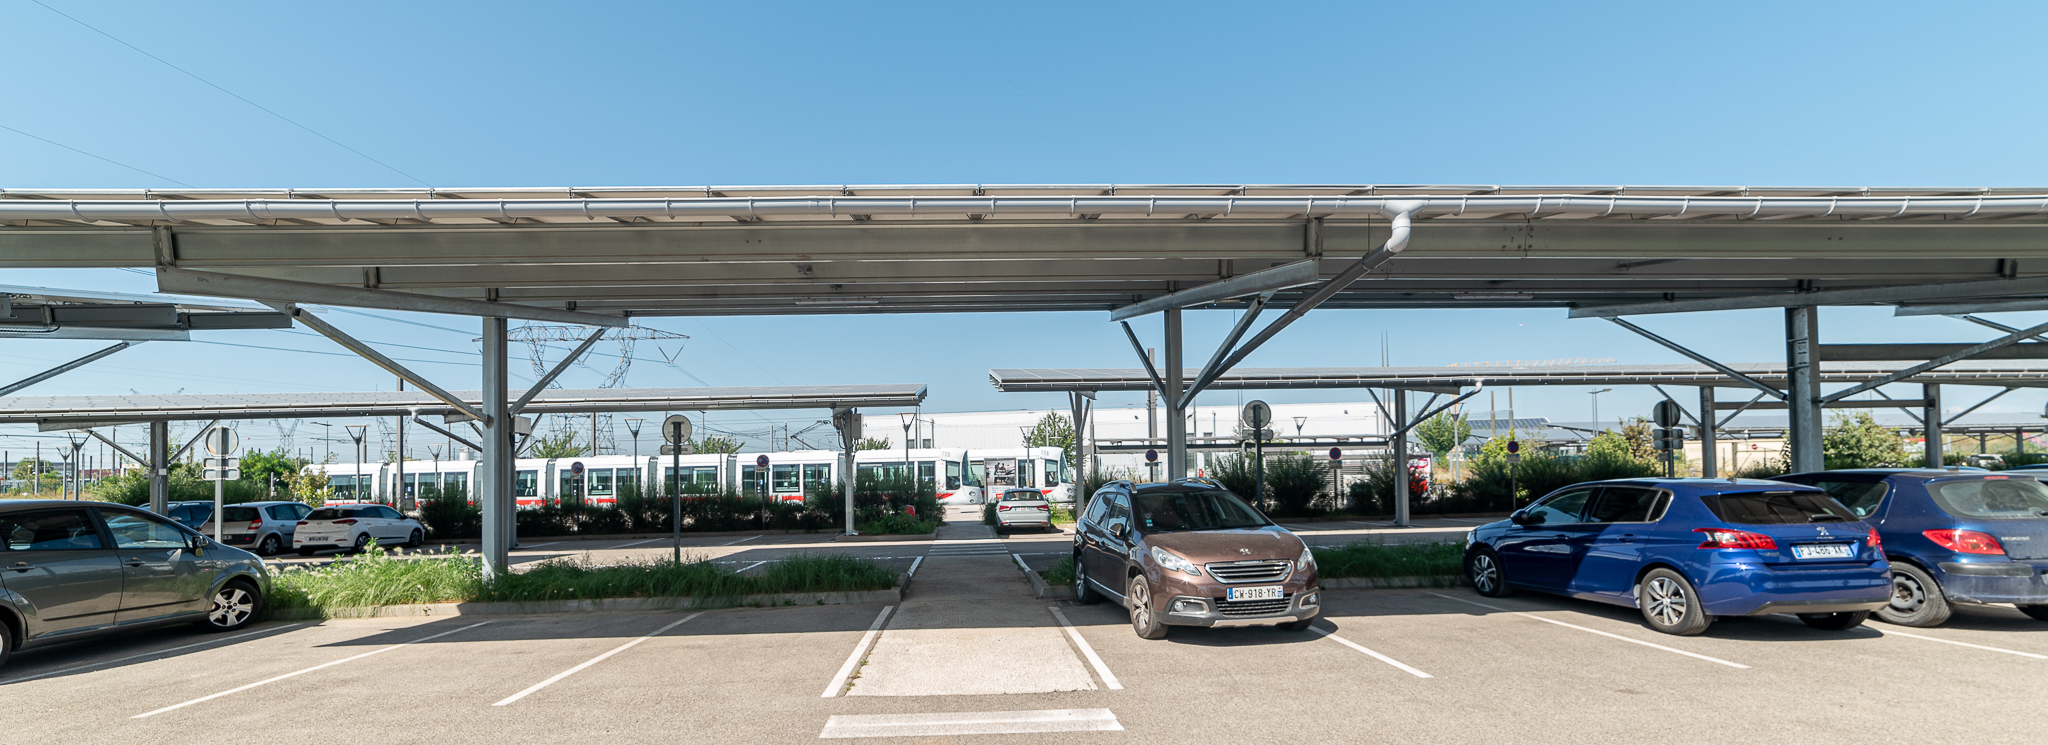 Ombrières photovoltaïques parking relais meyzieu les panettes sytral lyon